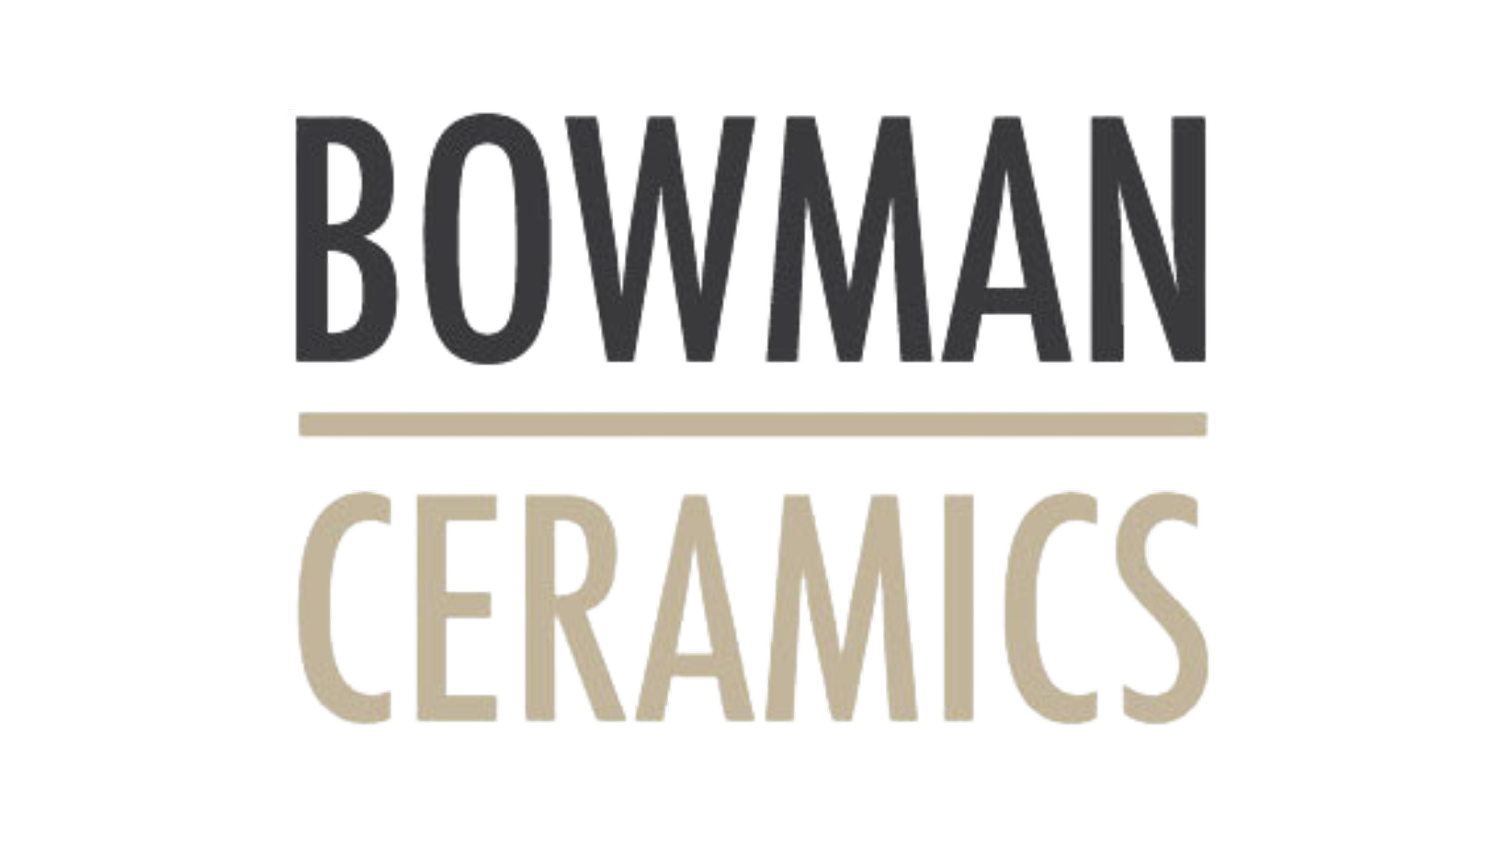 BOWMAN CERAMICS